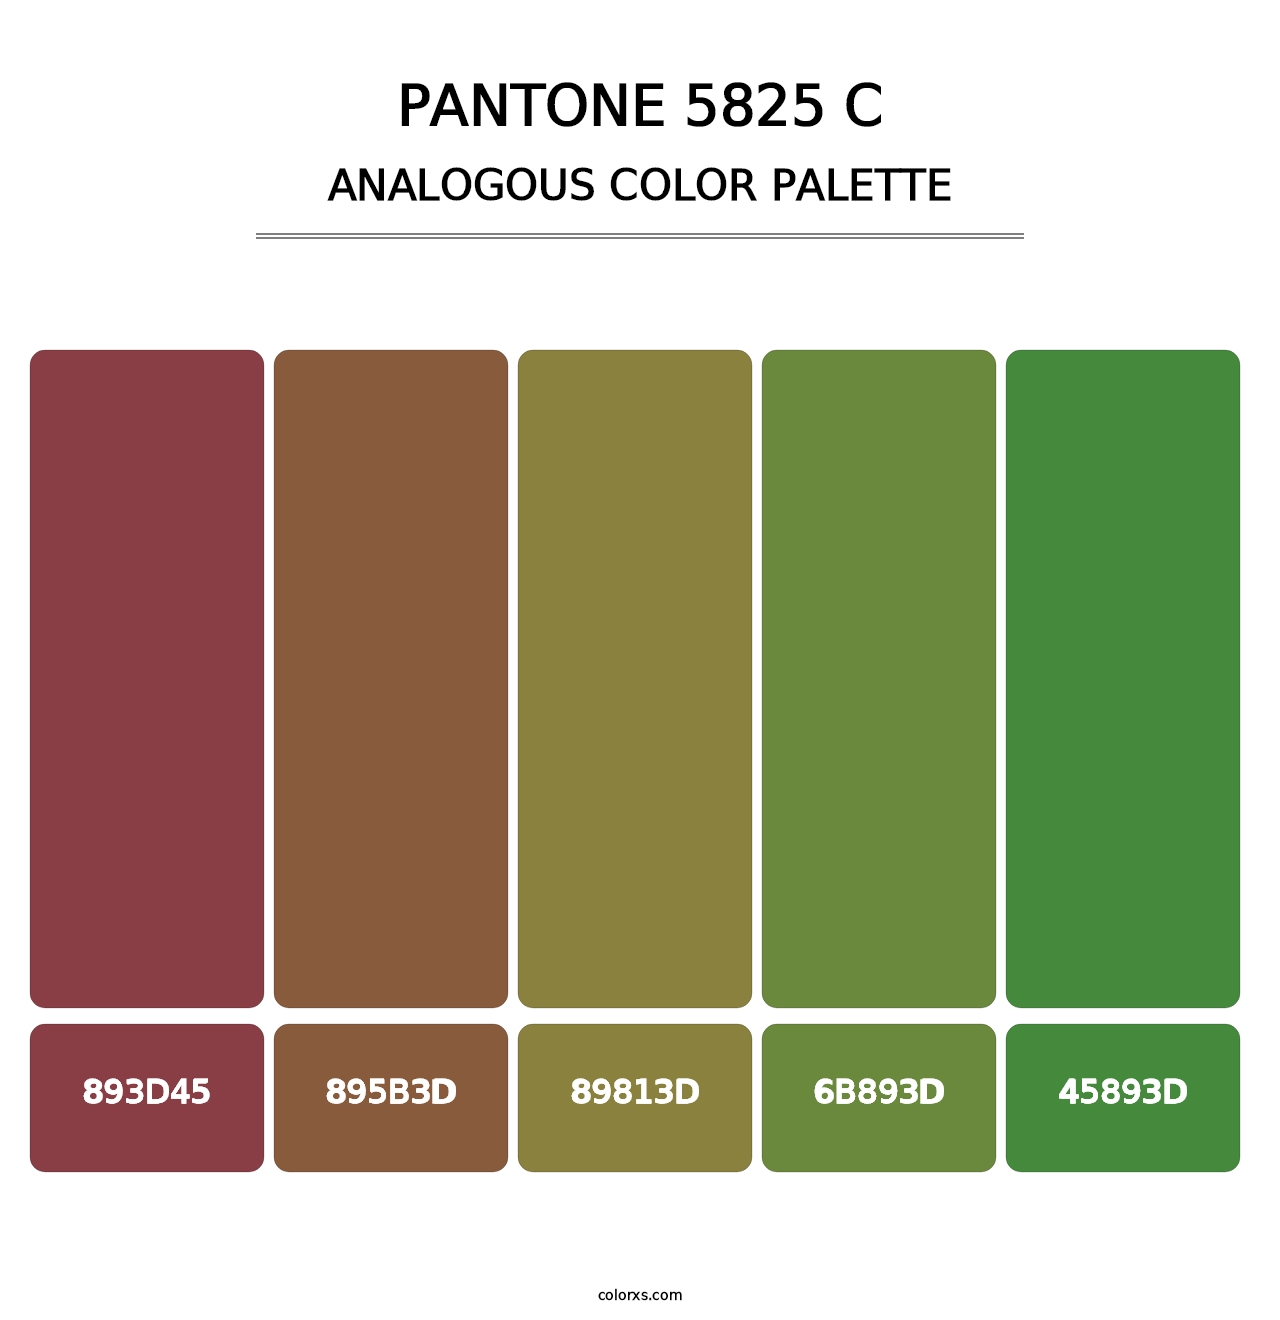 PANTONE 5825 C - Analogous Color Palette